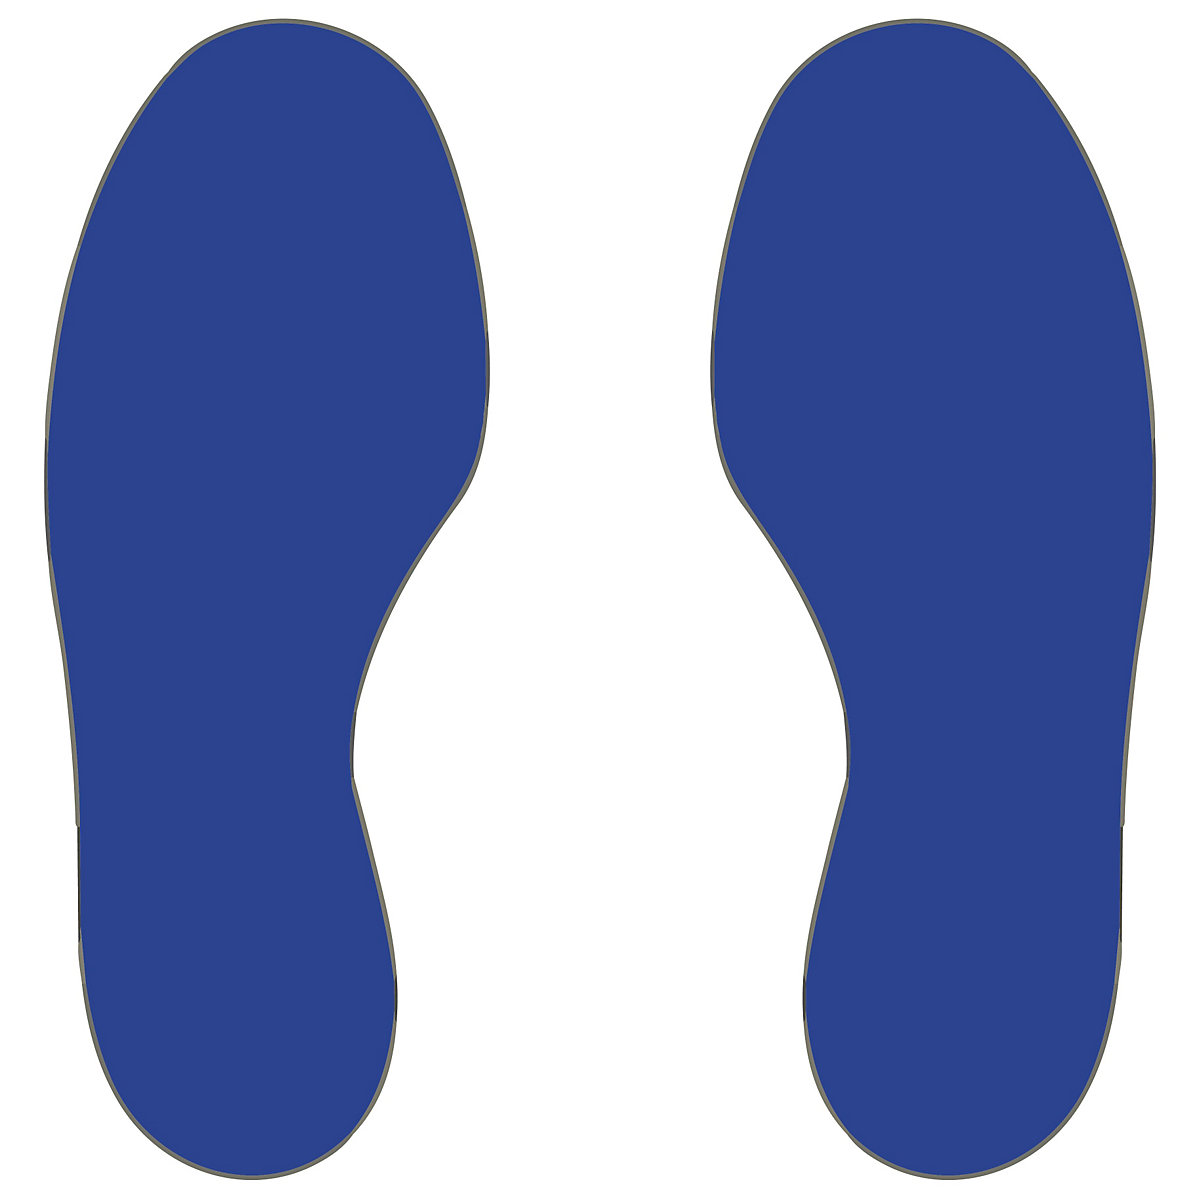 PVC padlójelölések, lábak, 5 jobb / 5 bal láb, cs. e. 10 db, kék